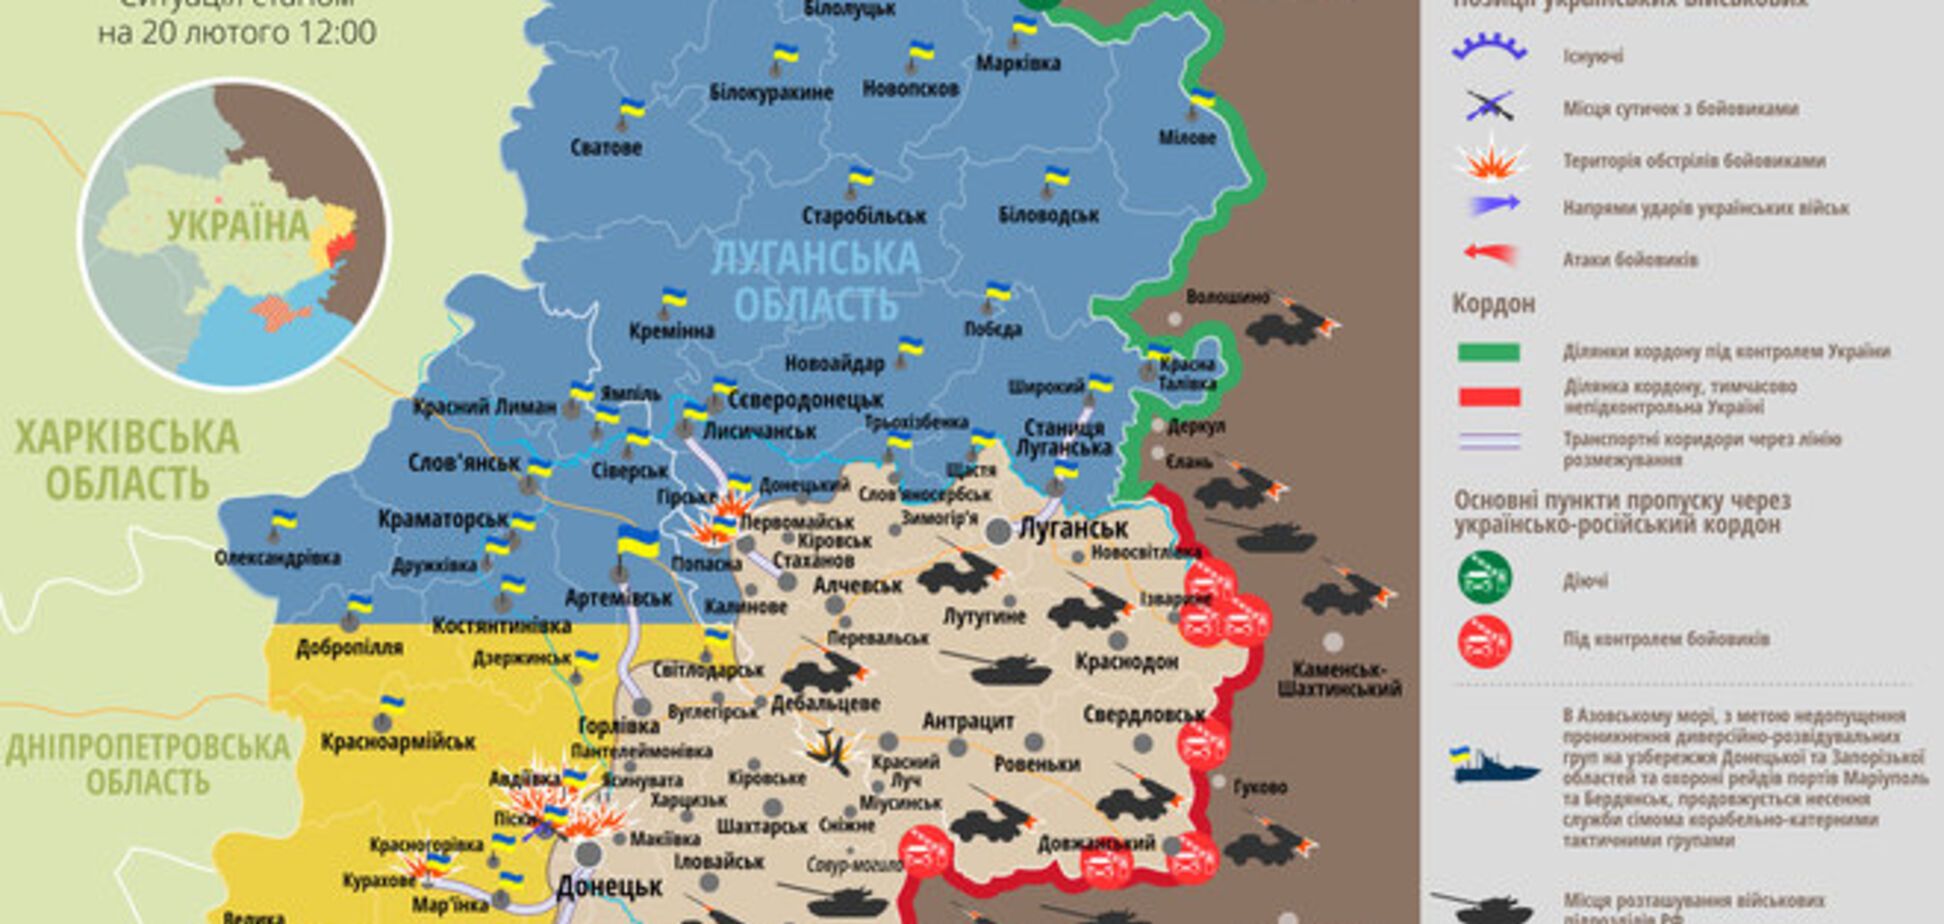 Россия наращивает оккупационный контингент на территории Донбасса: карта АТО